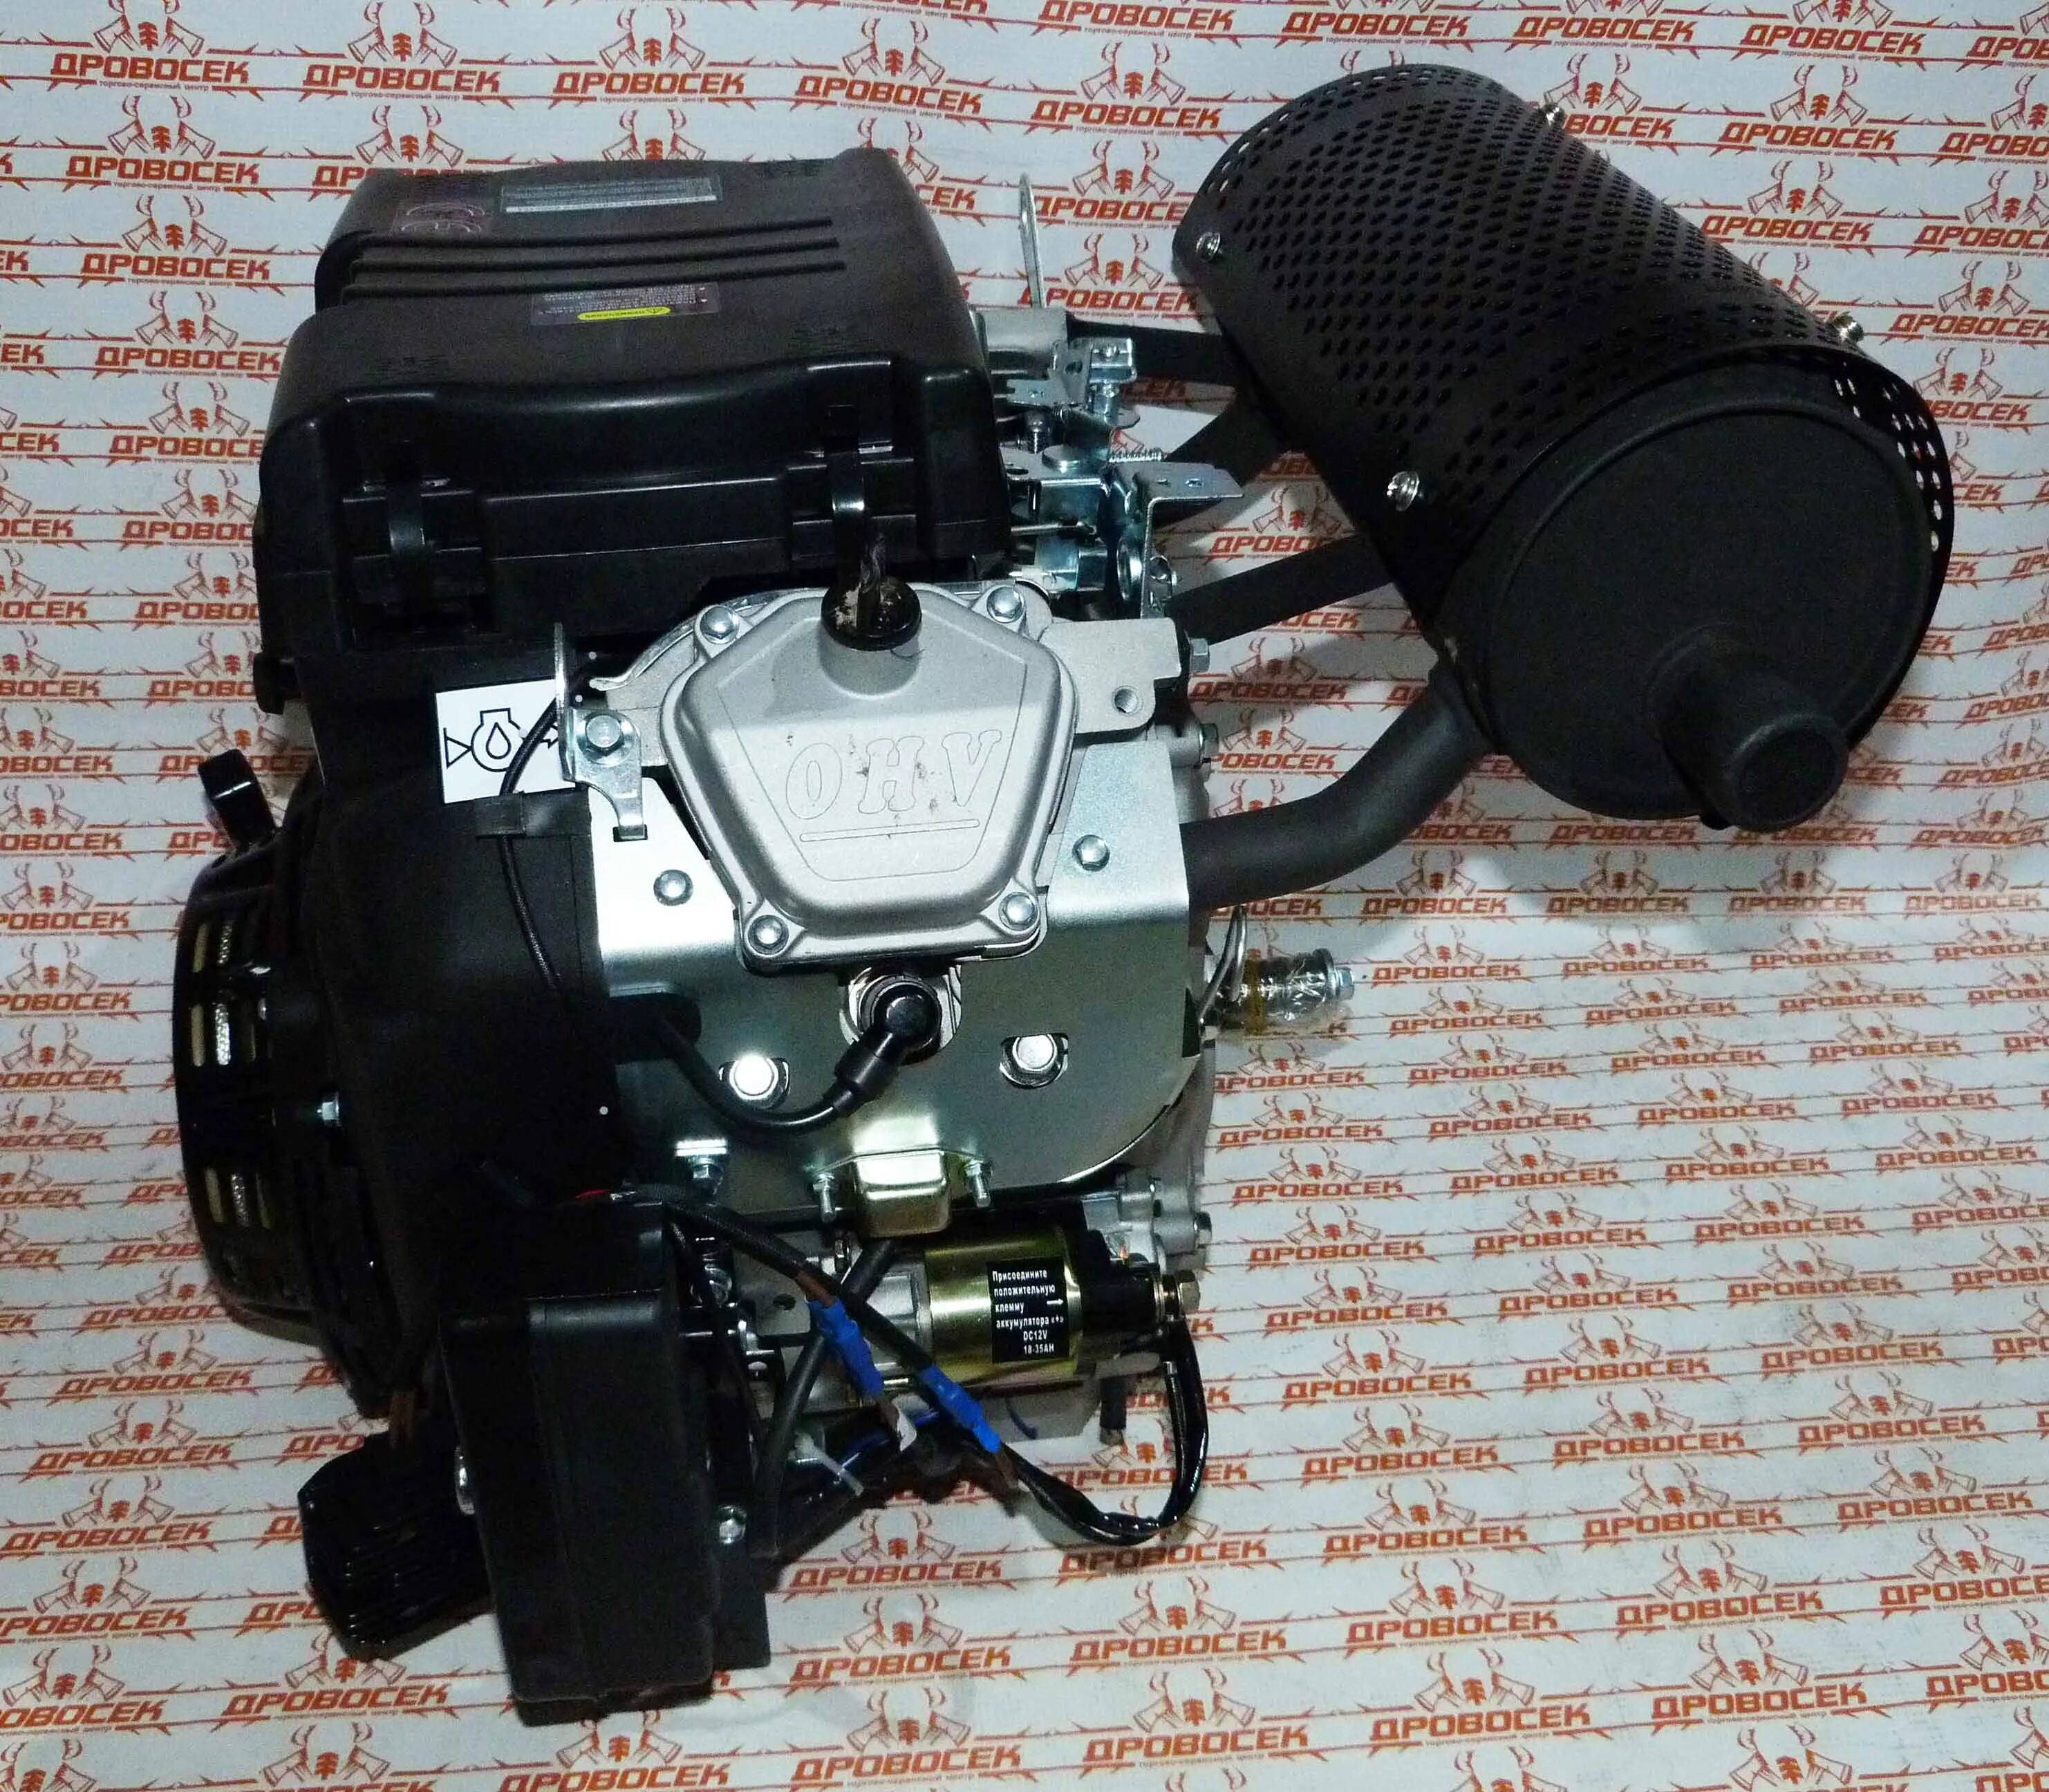 Двигатель бензиновый Lifan 2v78f-2a (24 л.с., 20а катушка). Lifan 2v78. Lifan 2v78f-2a. Lifan 24 л.с 2v78f-2a. Лифан 24 купить